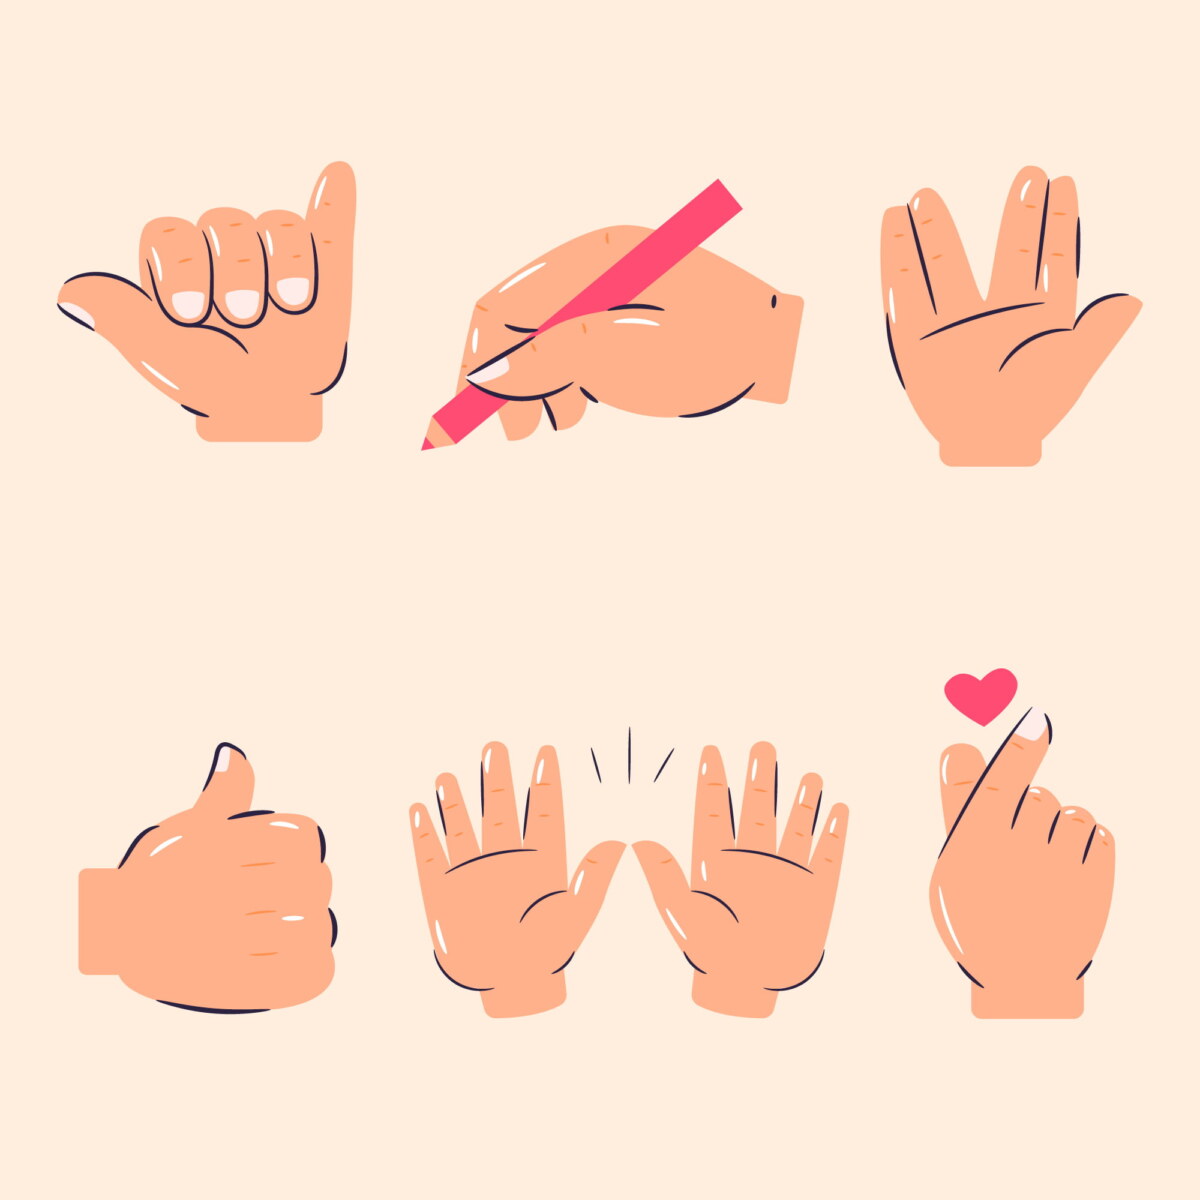 Ilustrações de mãos fazendo gestos simples que envolvem coordenação motora fina